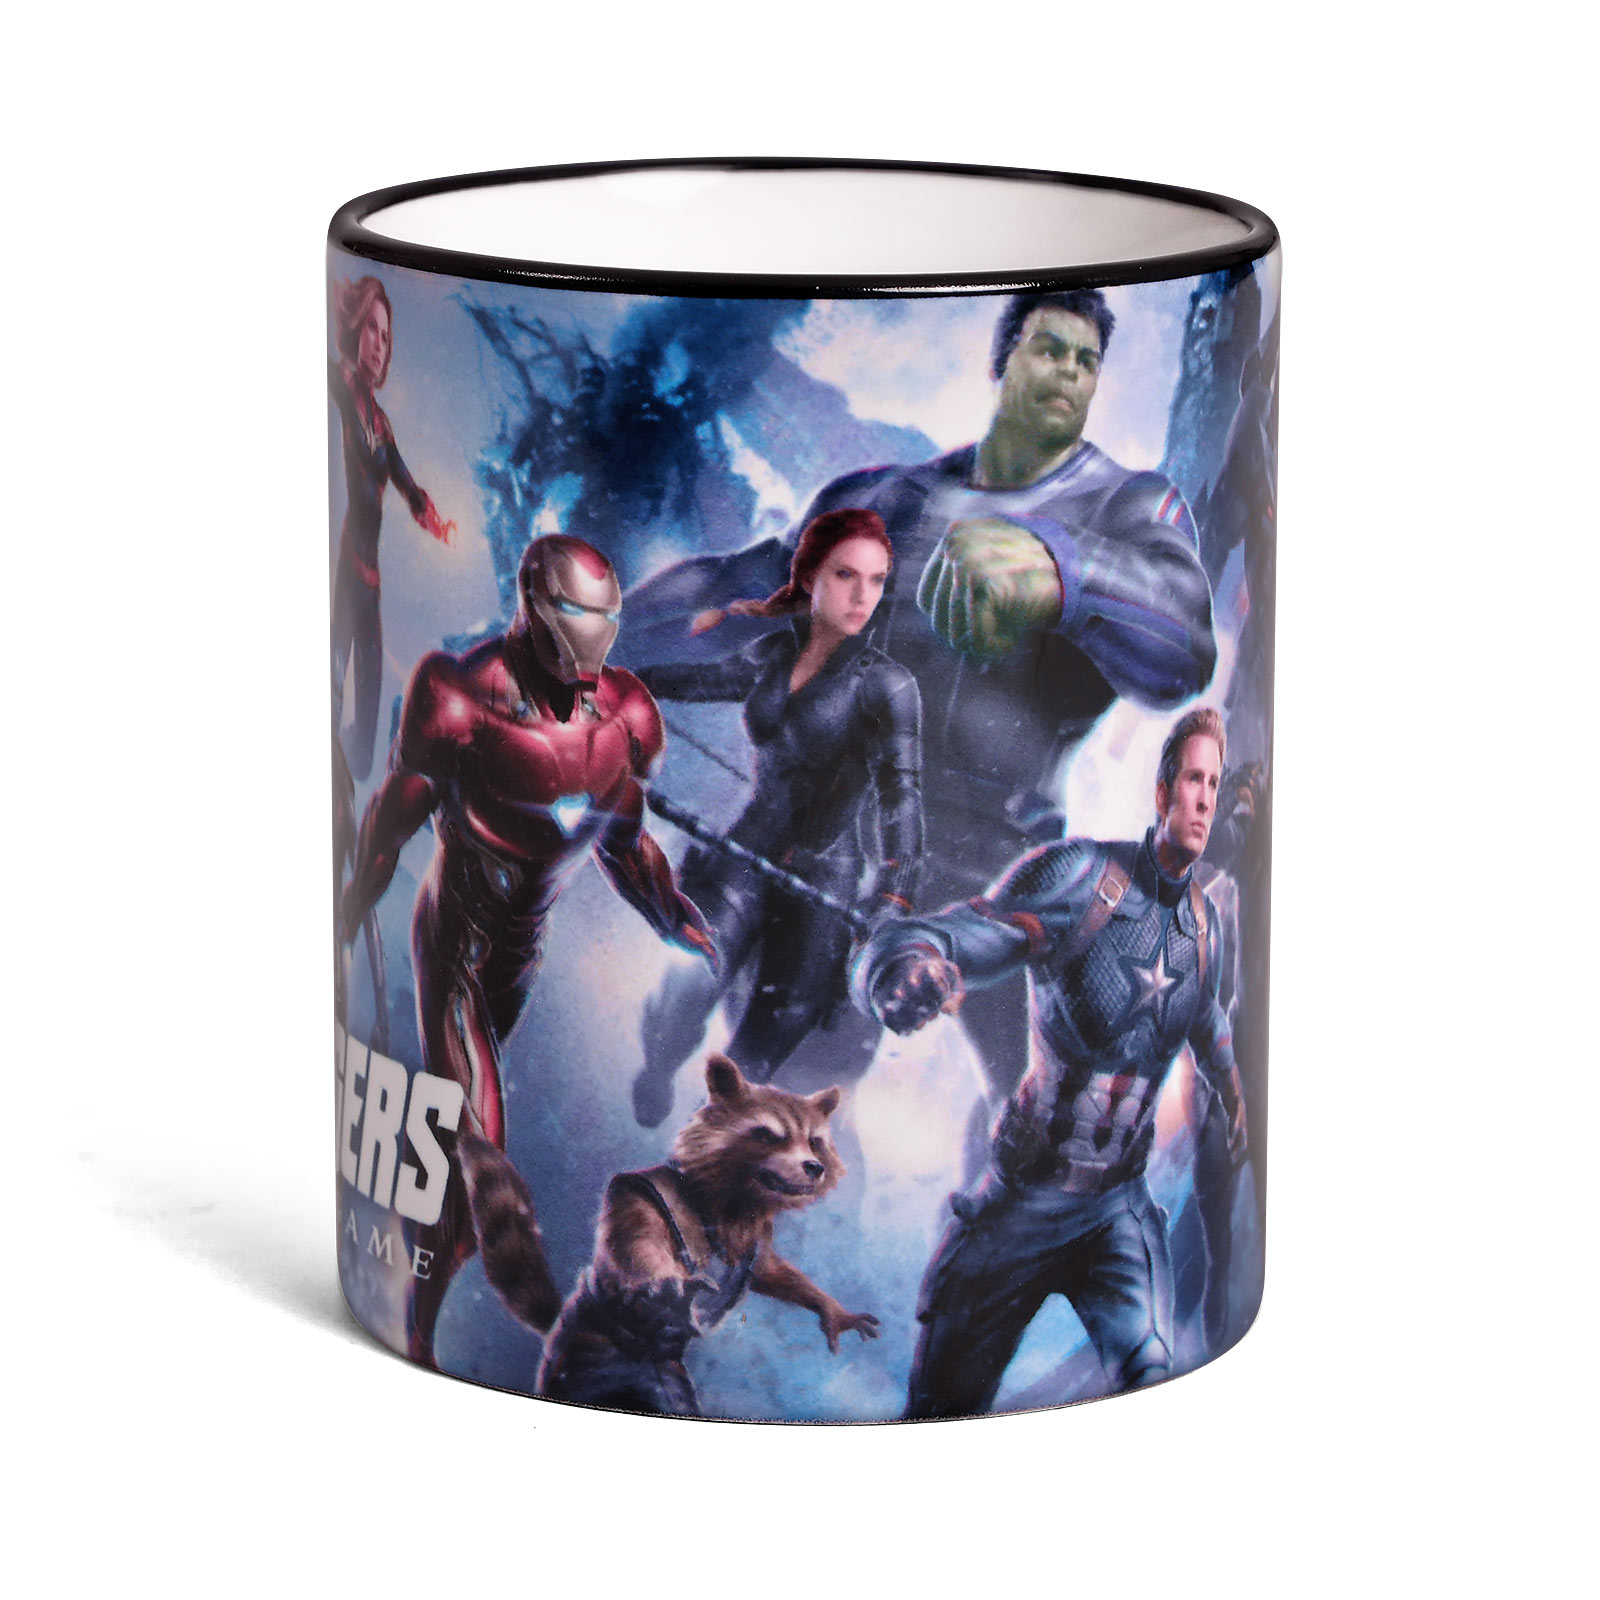 Avengers - Endgame Heroes Mug